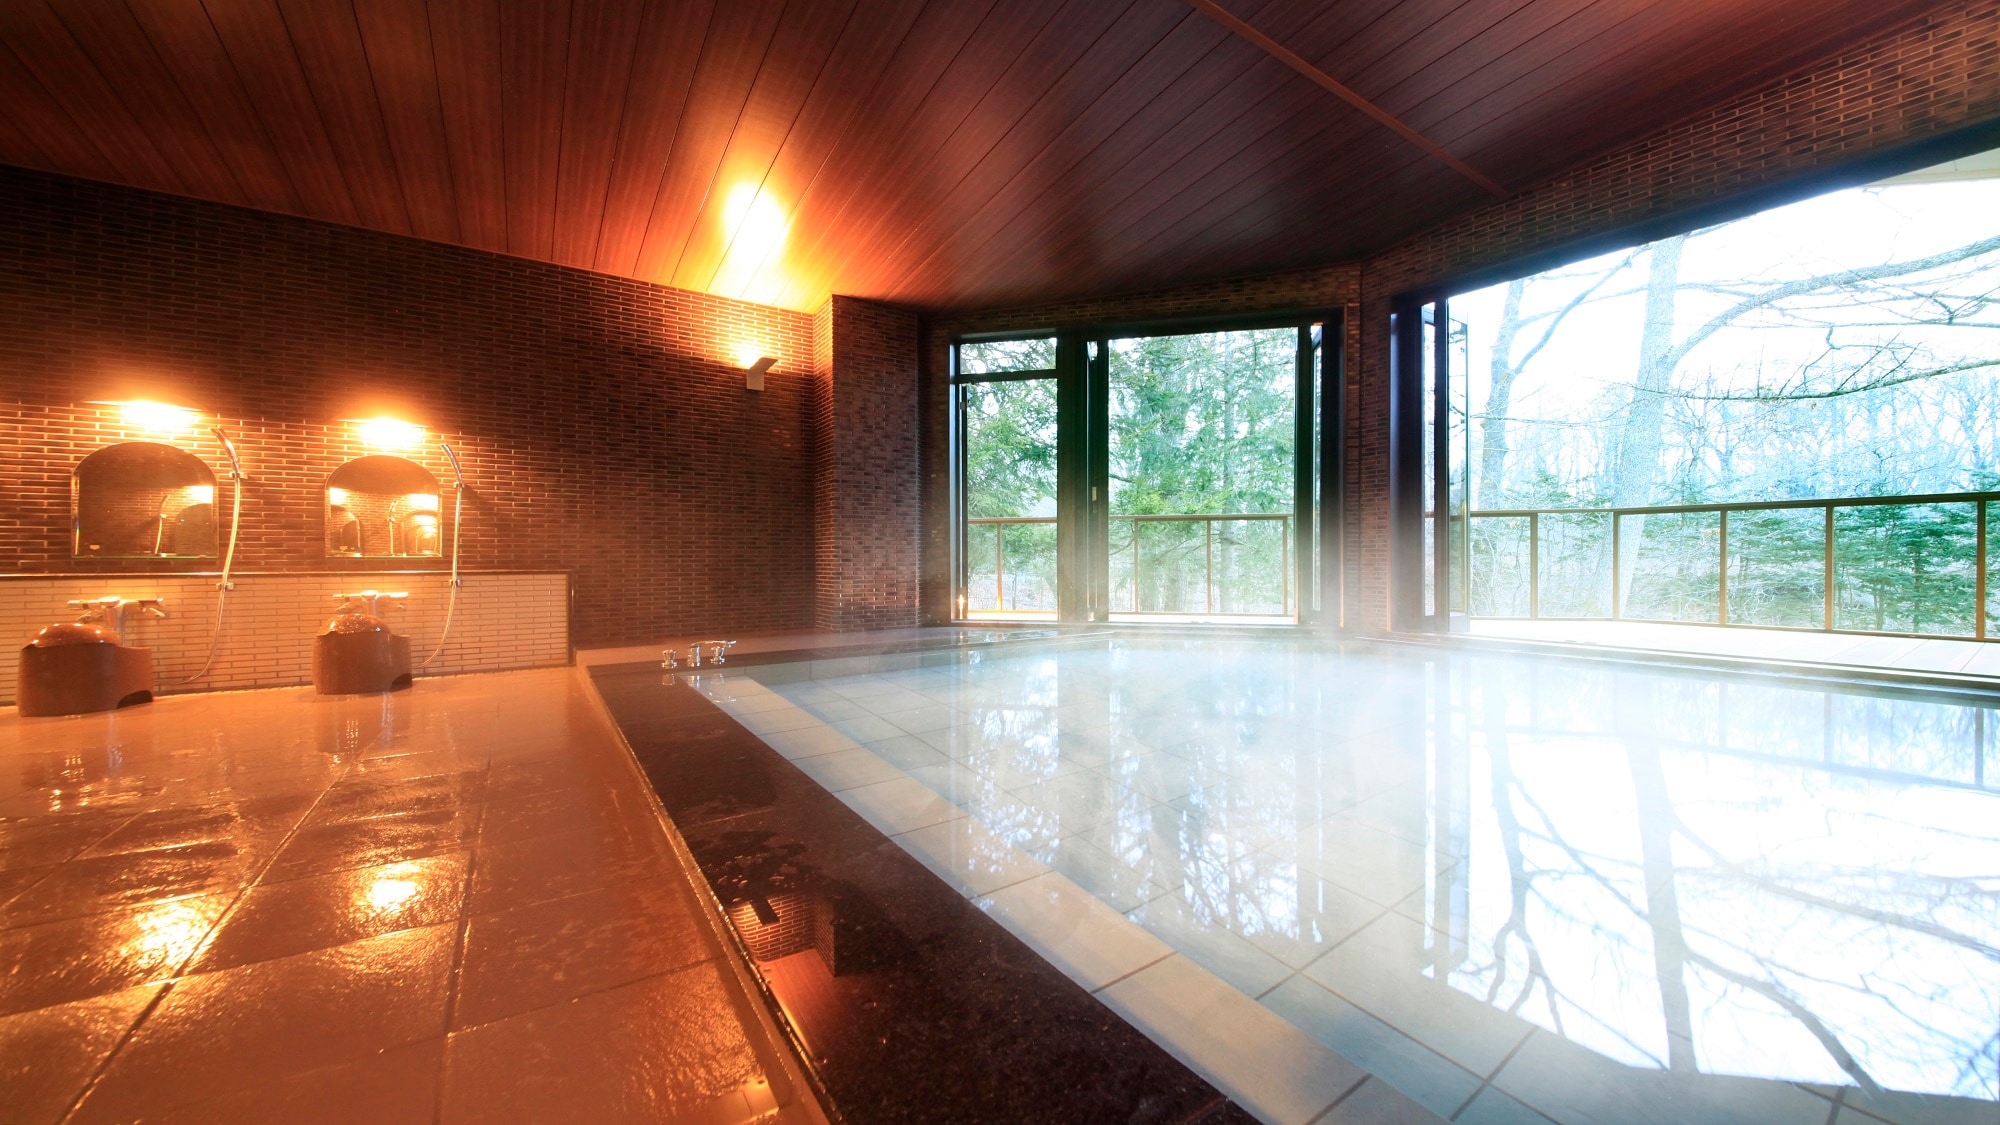 ■ We bring in the hot springs of "Hataya Onsen" in Gunma.